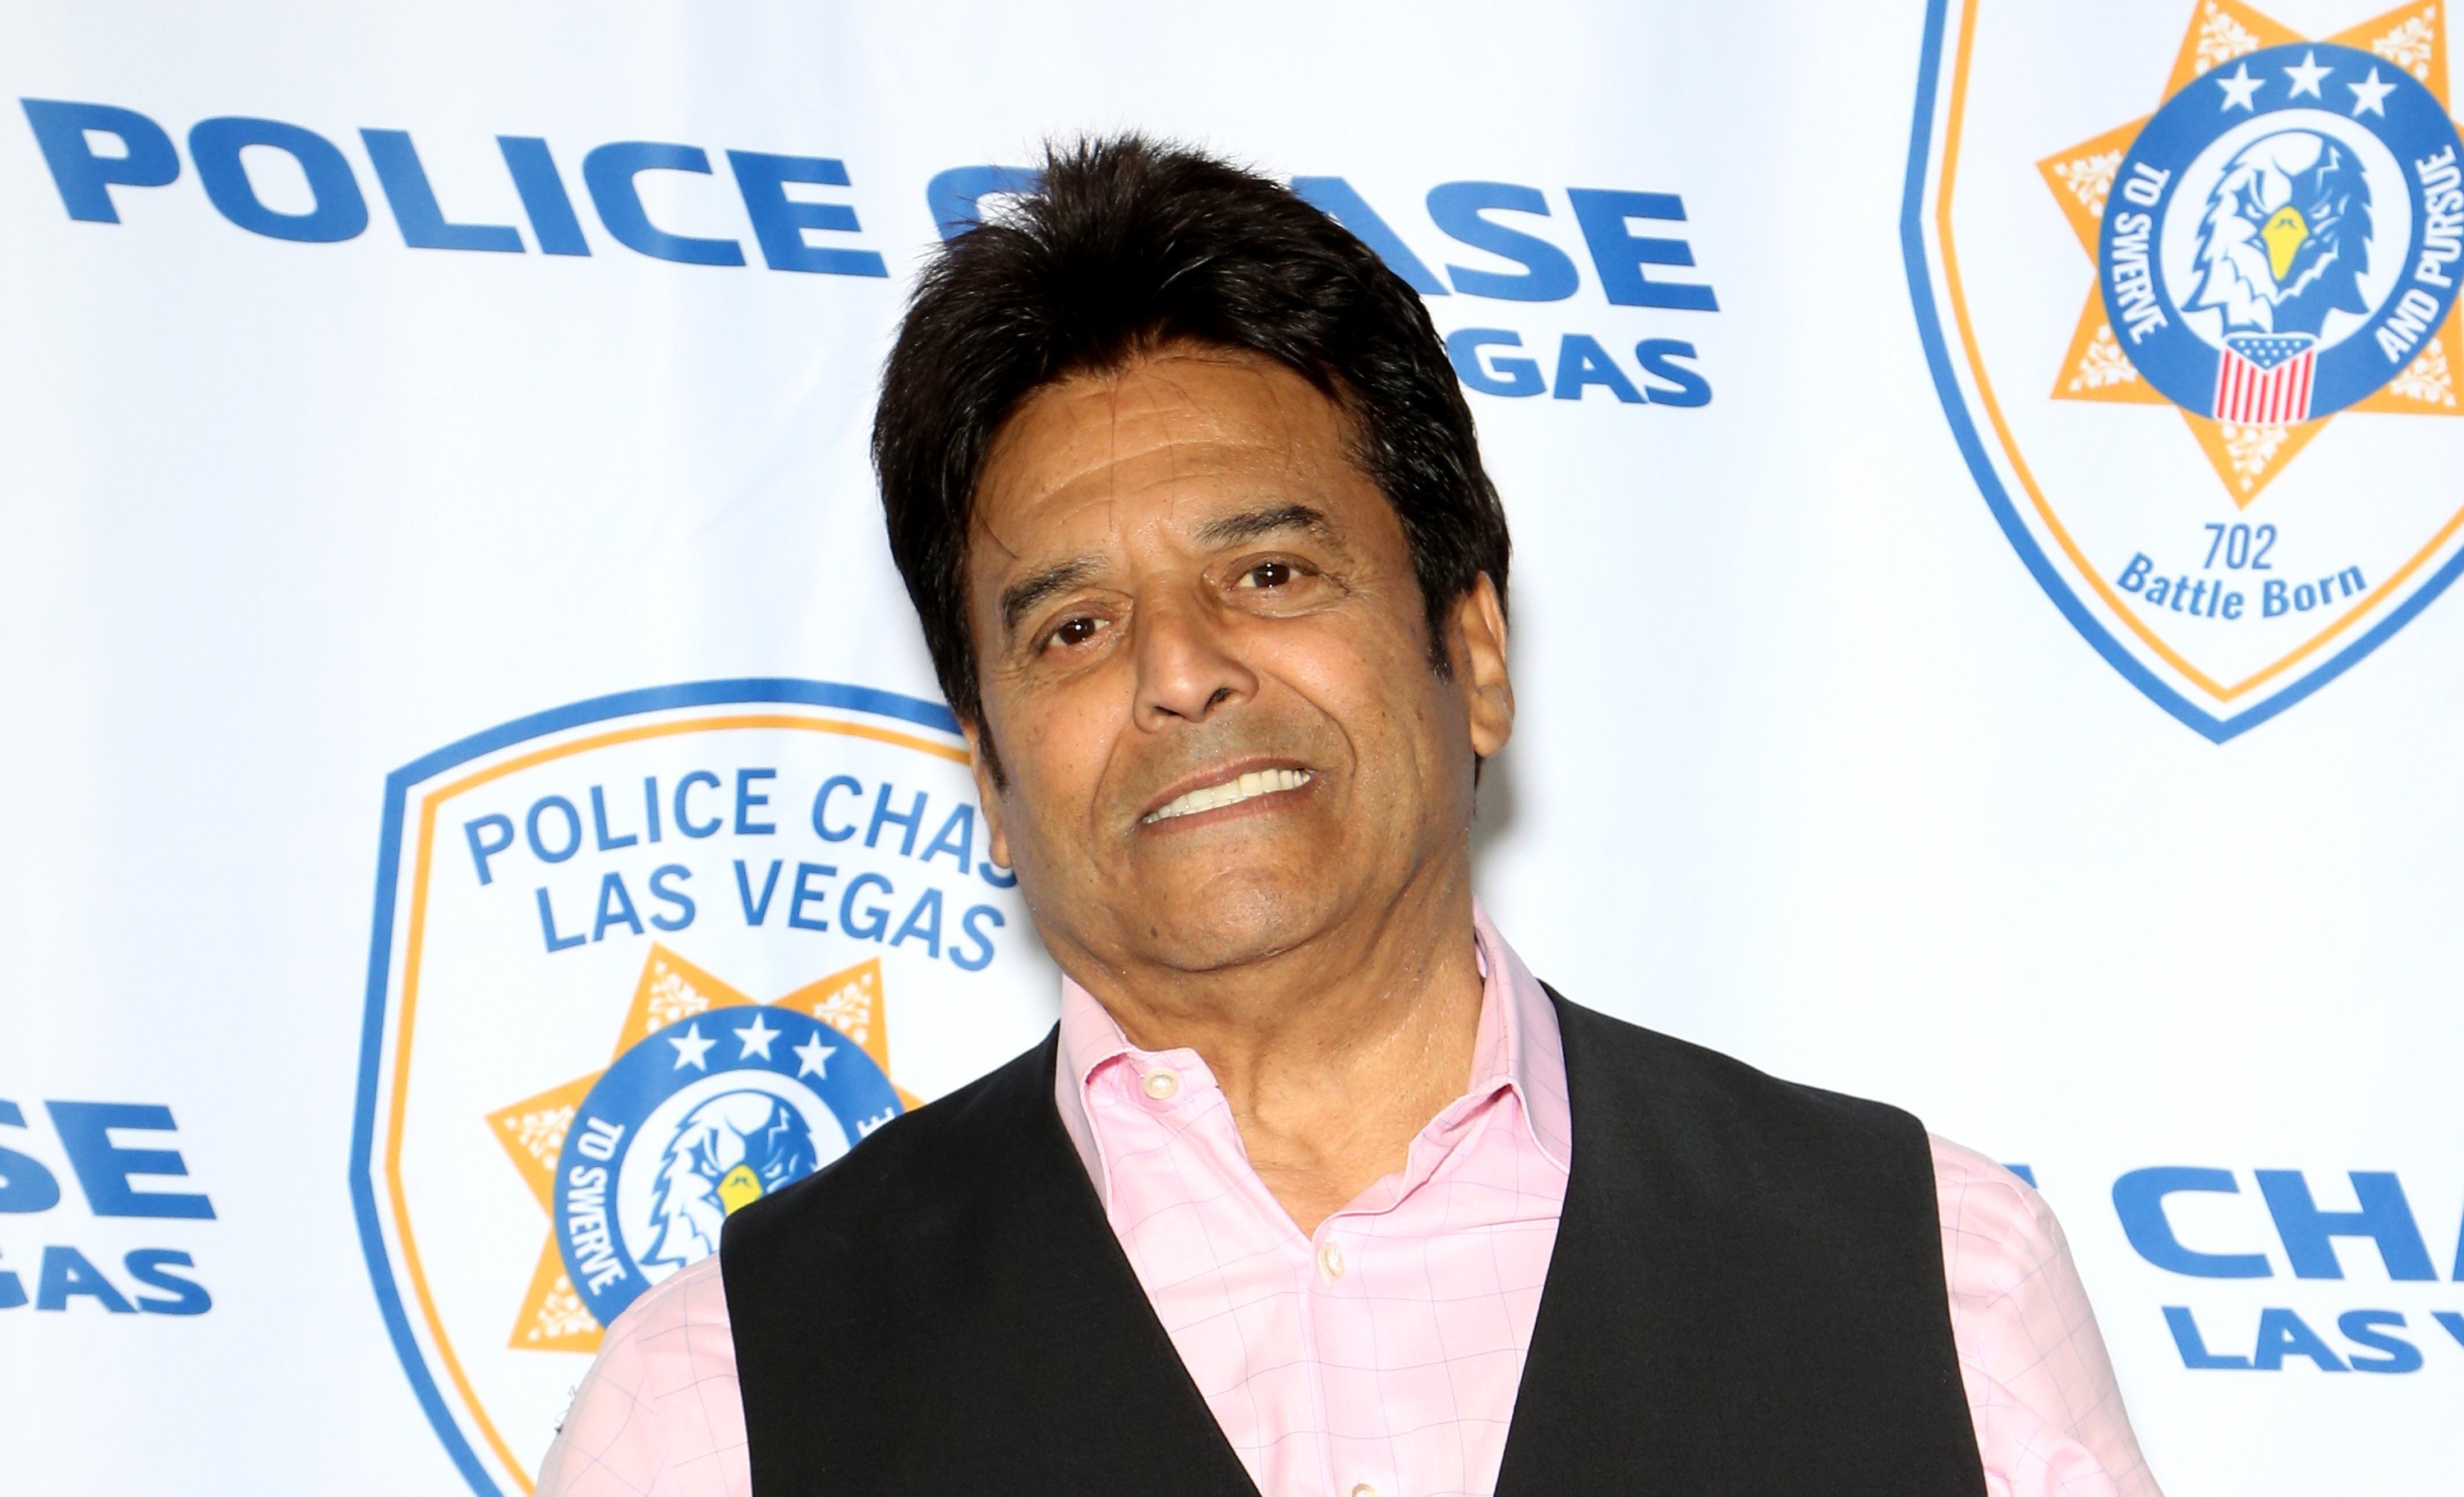 Erik Estrada asiste a la apertura de Police Chase Las Vegas en enero de 2019 en Las Vegas, Nevada || Fuente: Getty Images